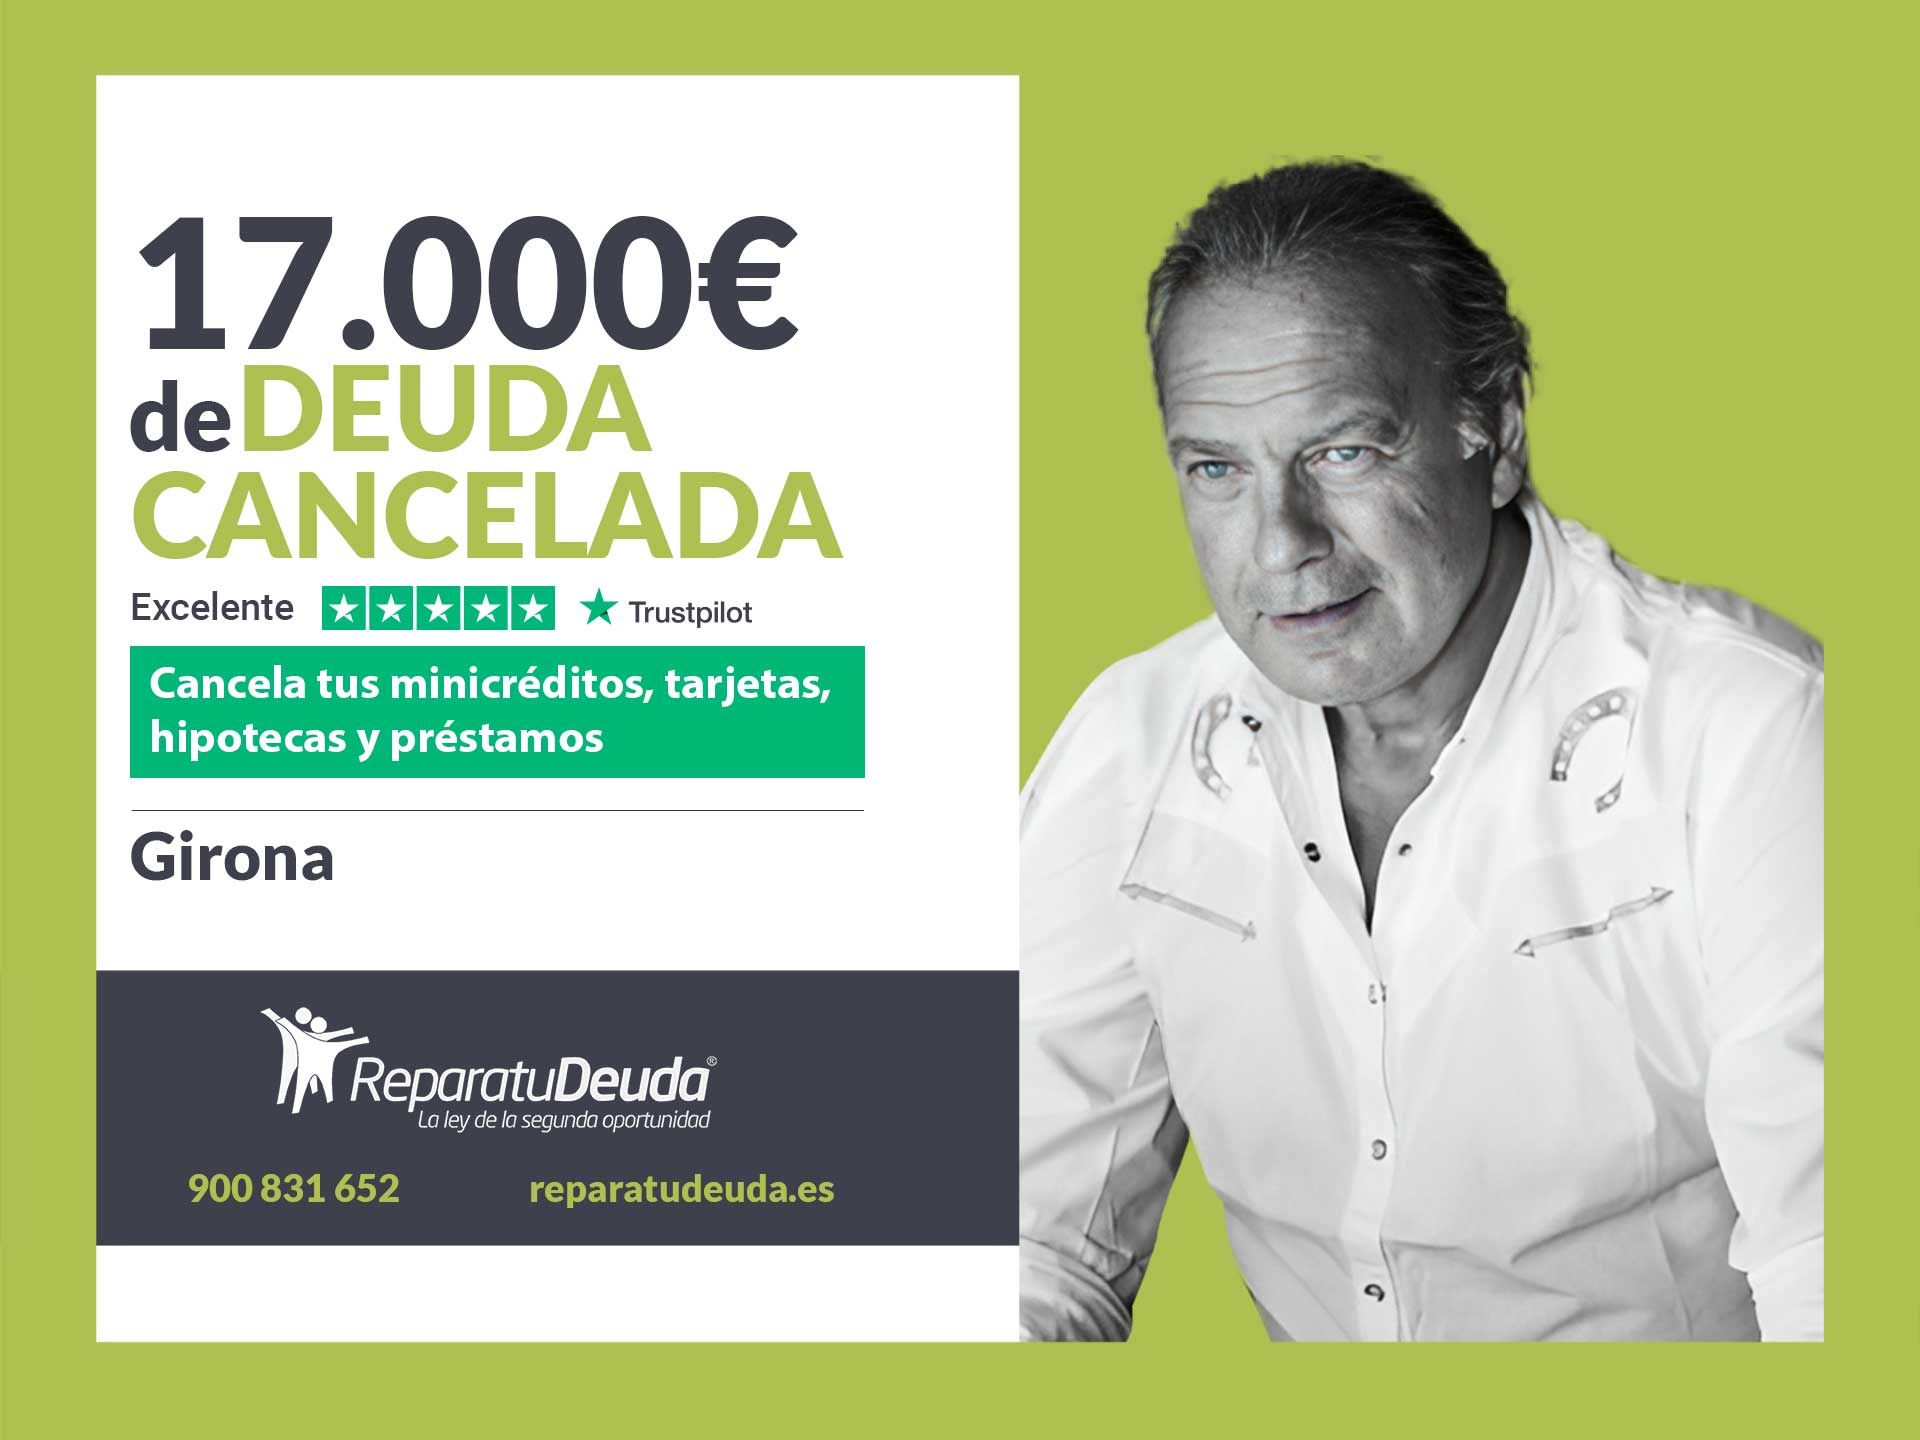 Repara tu Deuda Abogados cancela 17.000? en Girona (Catalunya) con la Ley de Segunda Oportunidad